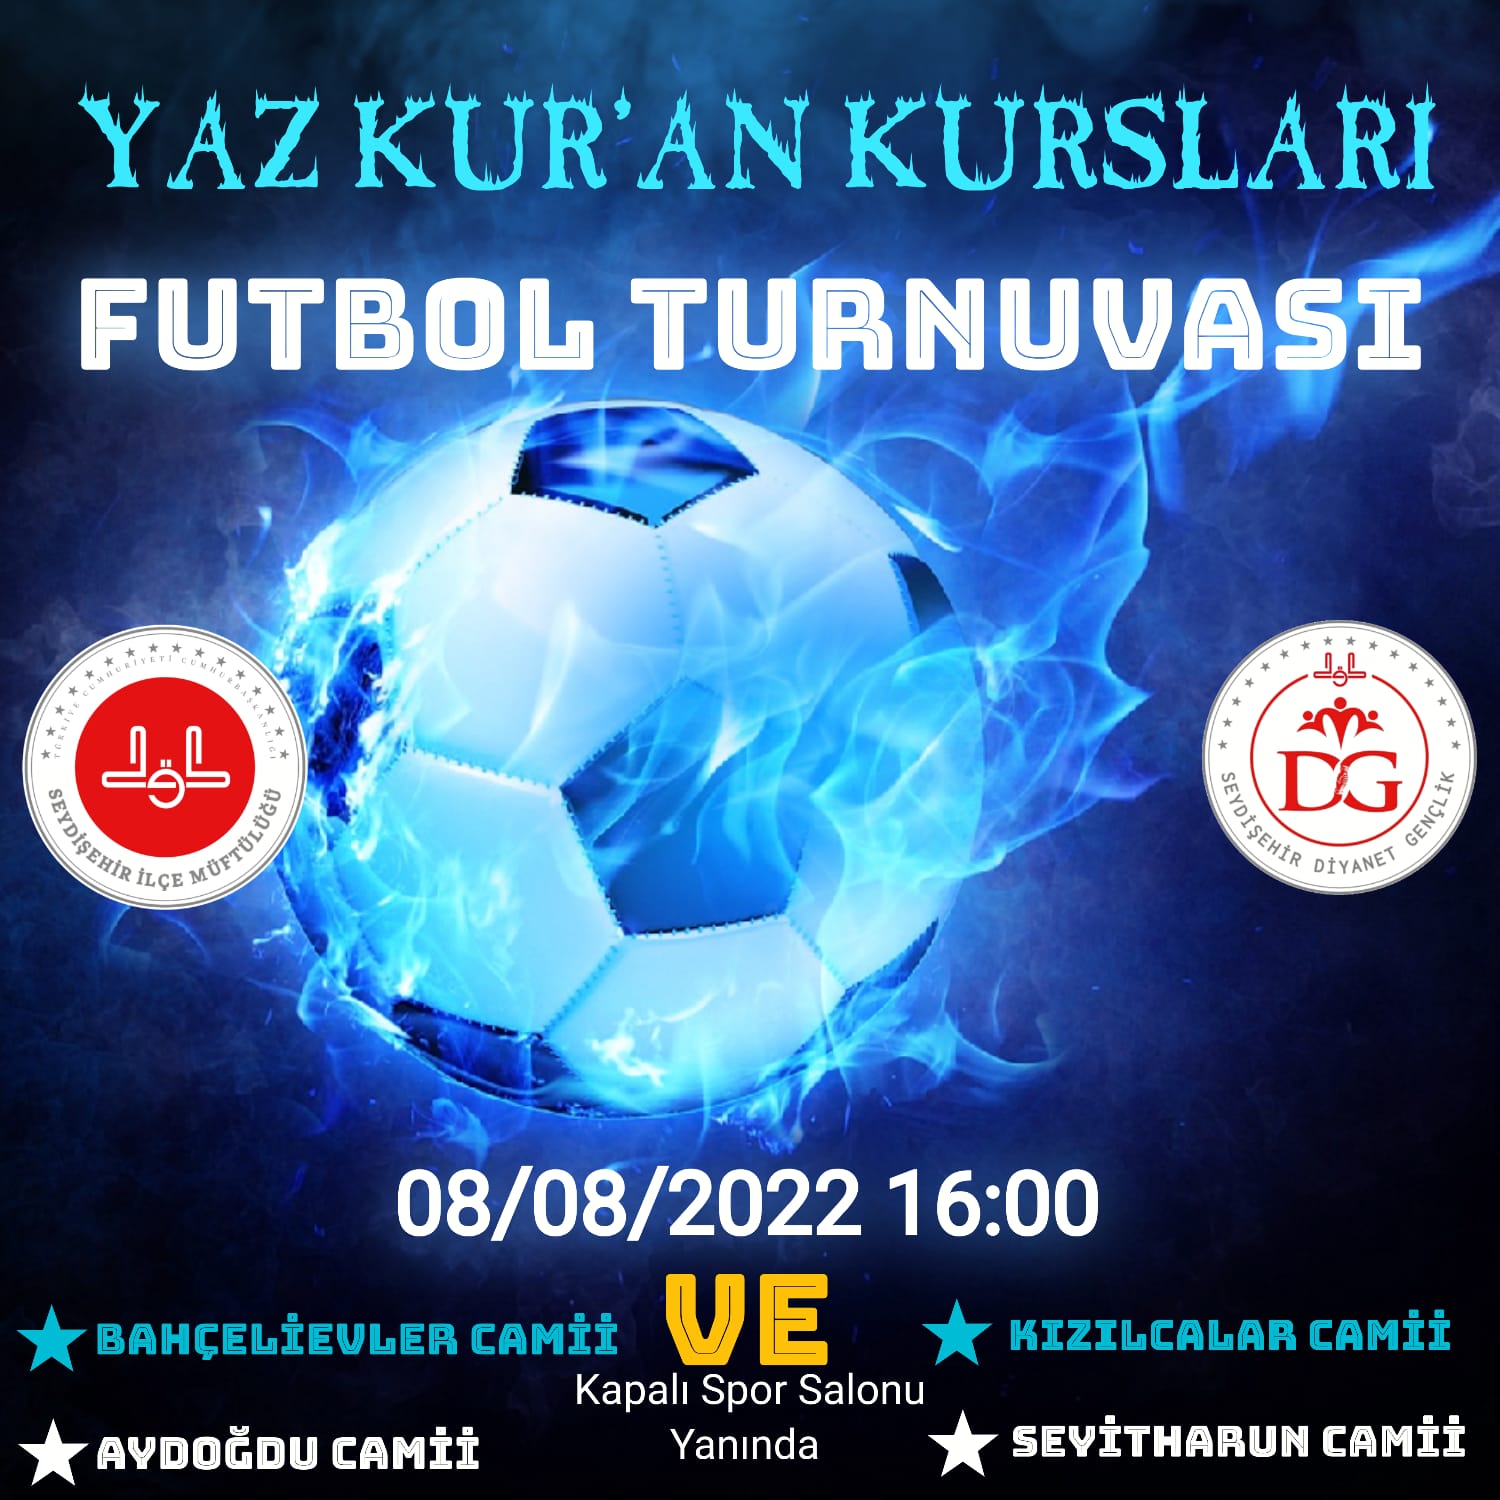 Seydişehir'de  Yaz Kur’an Kursları Futbol Turnuvası  başlıyor